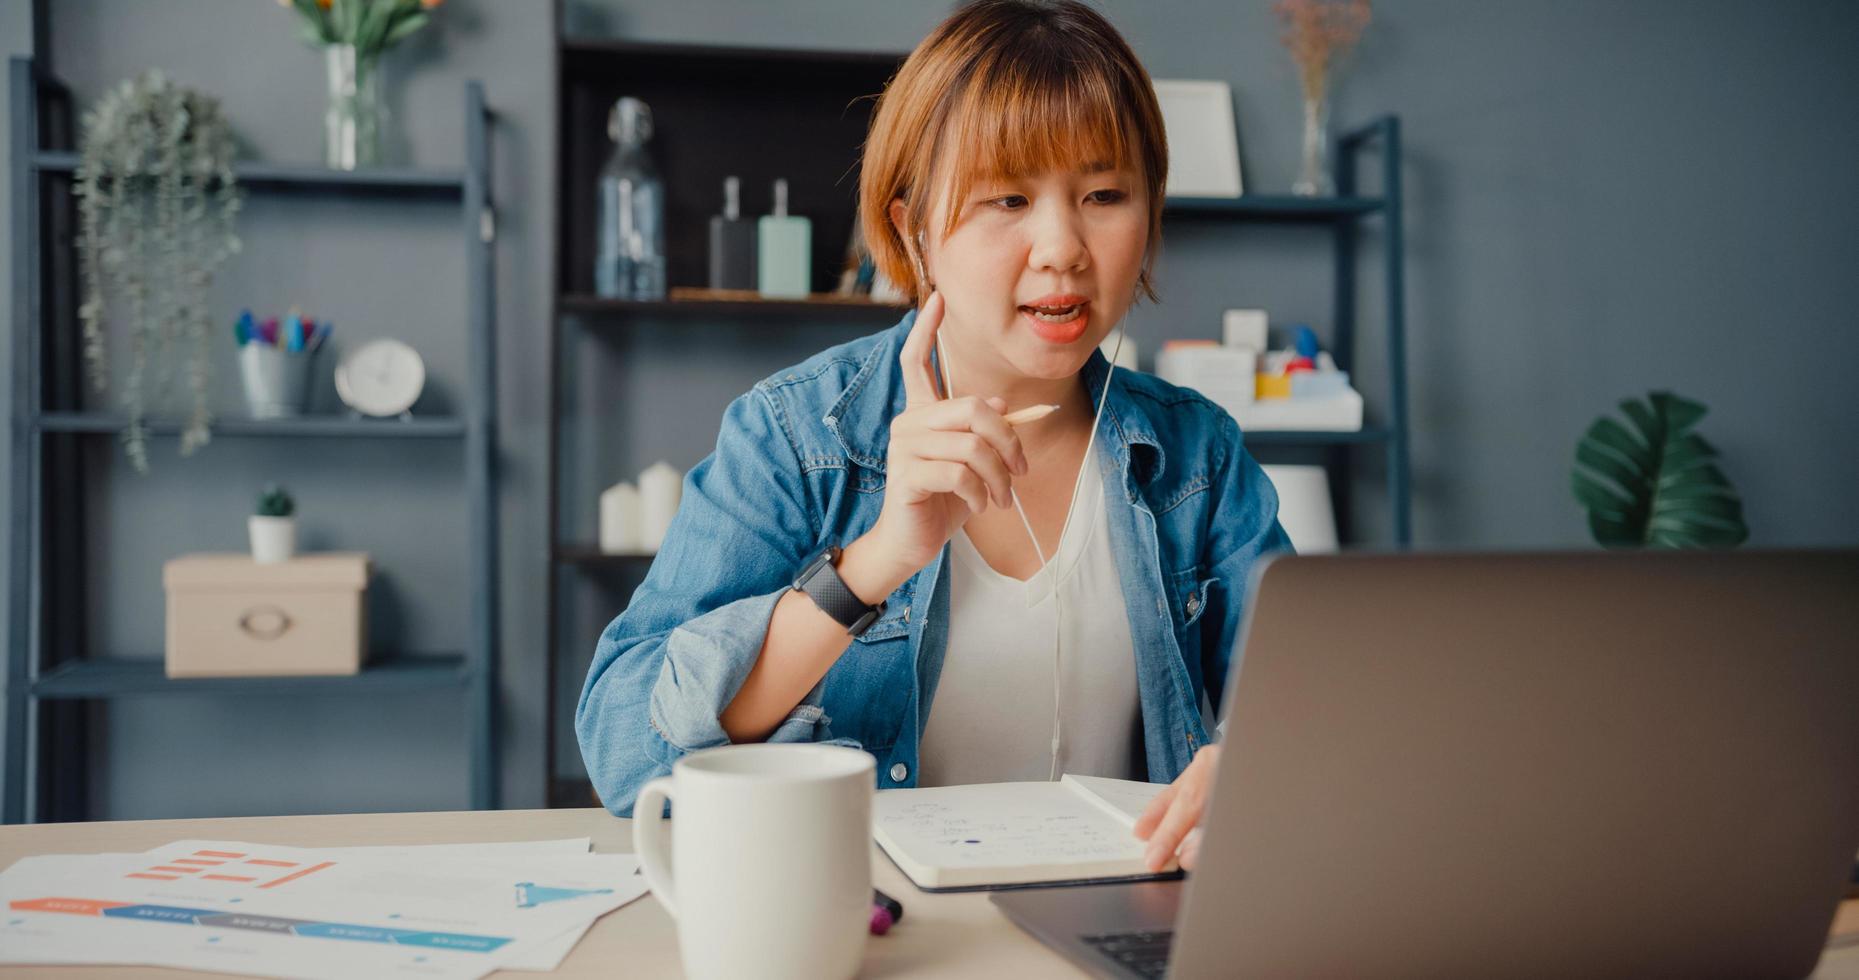 donna d'affari asiatica che utilizza laptop parla con i colleghi del piano in videochiamata mentre lavora da casa in soggiorno foto